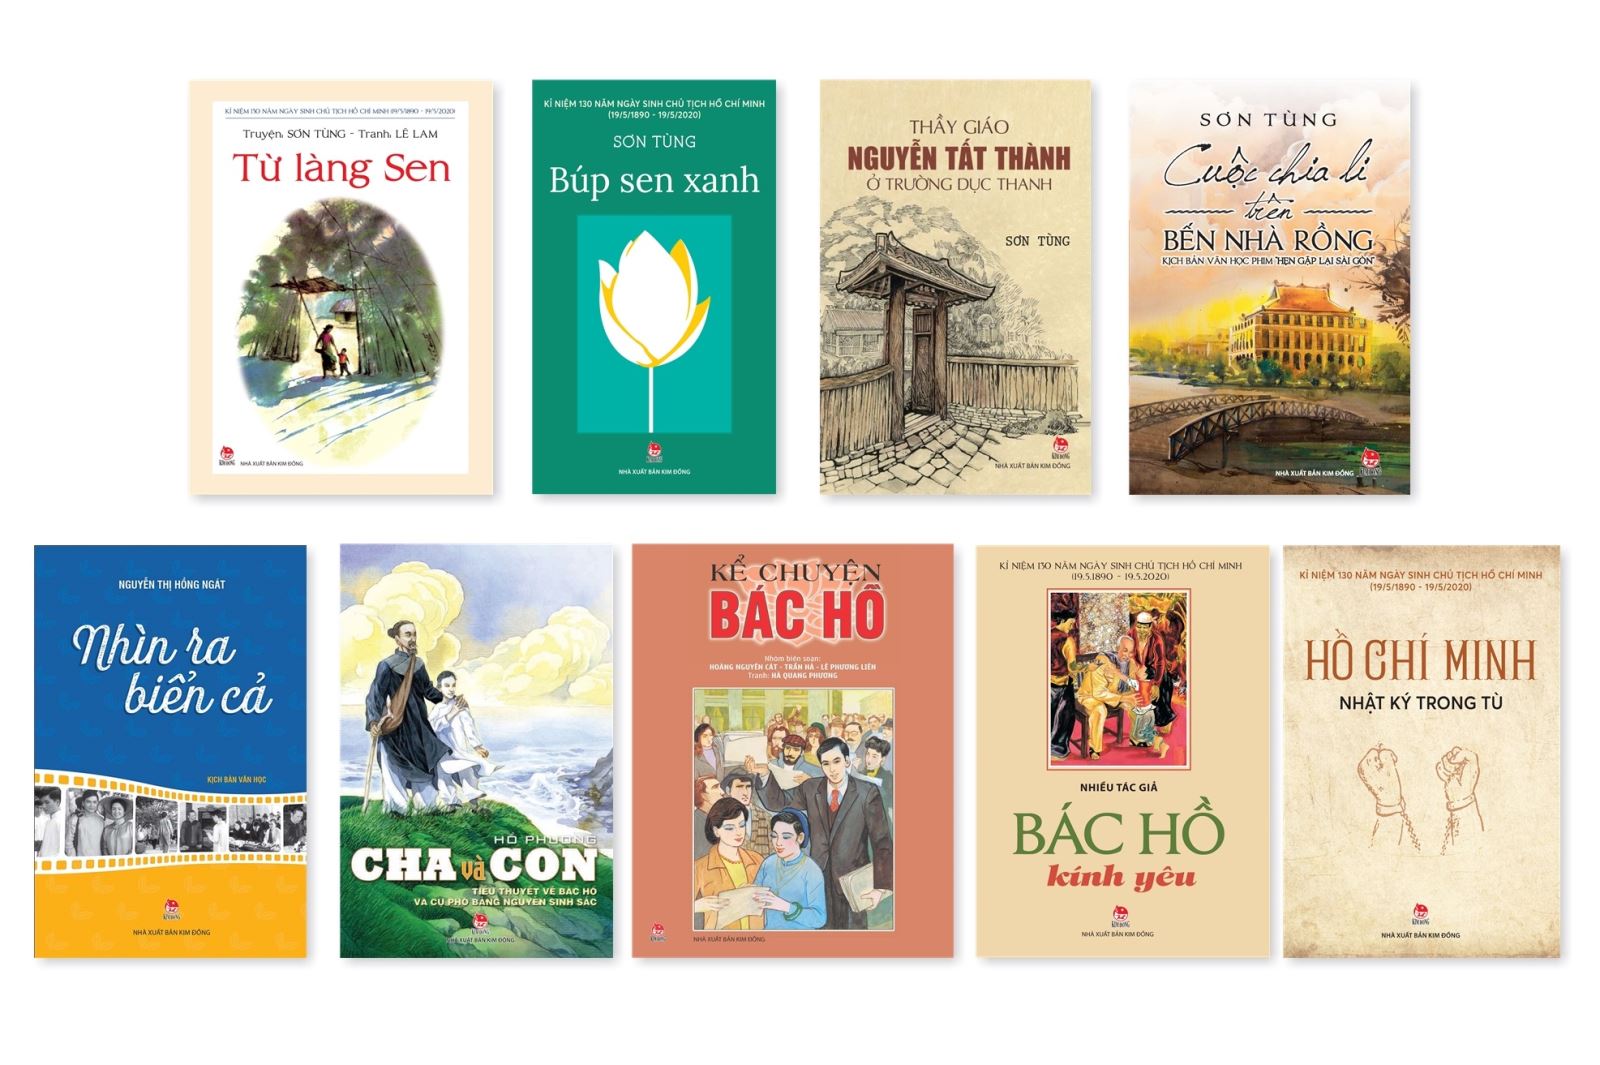 Bác Hồ, tác phẩm văn học, thiếu nhi, quê hương Việt Nam: Nếu bạn đang tìm kiếm tác phẩm văn học viết về Bác Hồ- người được mệnh danh là \